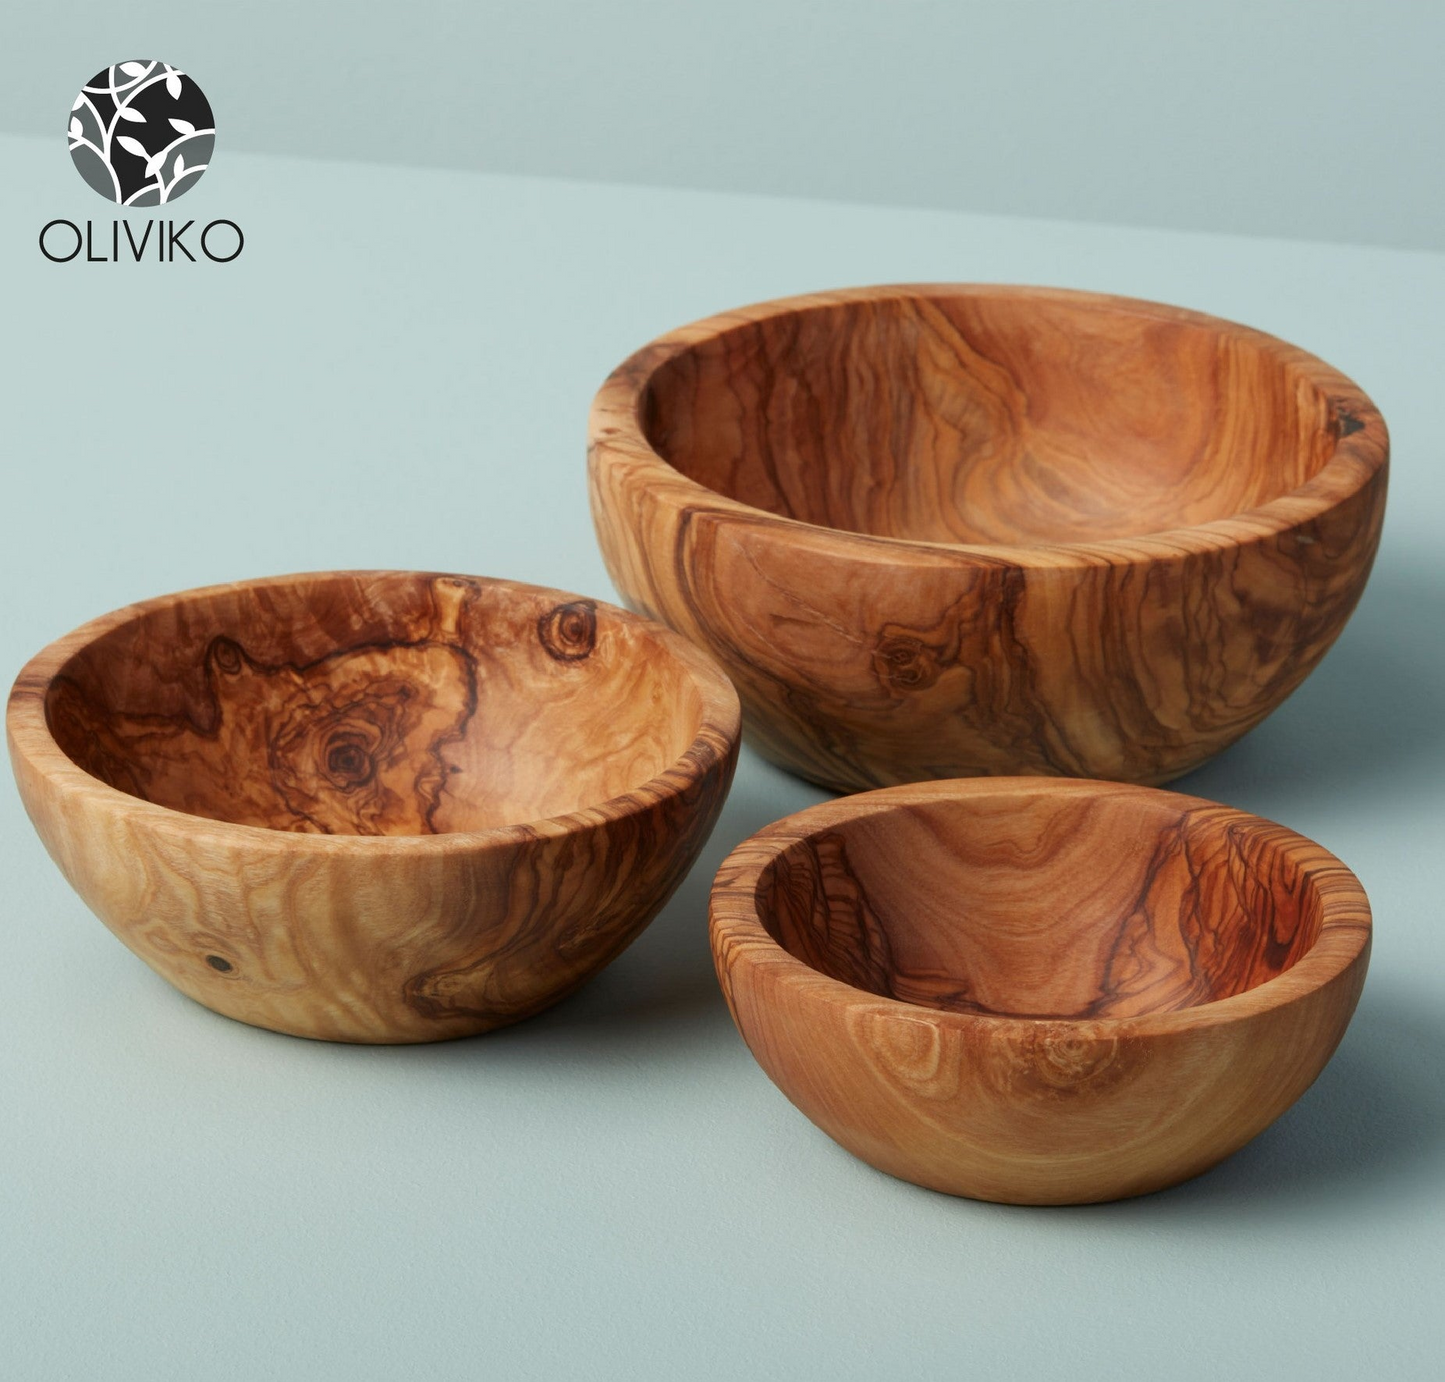 OLIVIKO 100% Handmade Olive Wood kit 3 Bowls, slad Bowl, snack Bowl 12, 14 and 16 cm Bowl